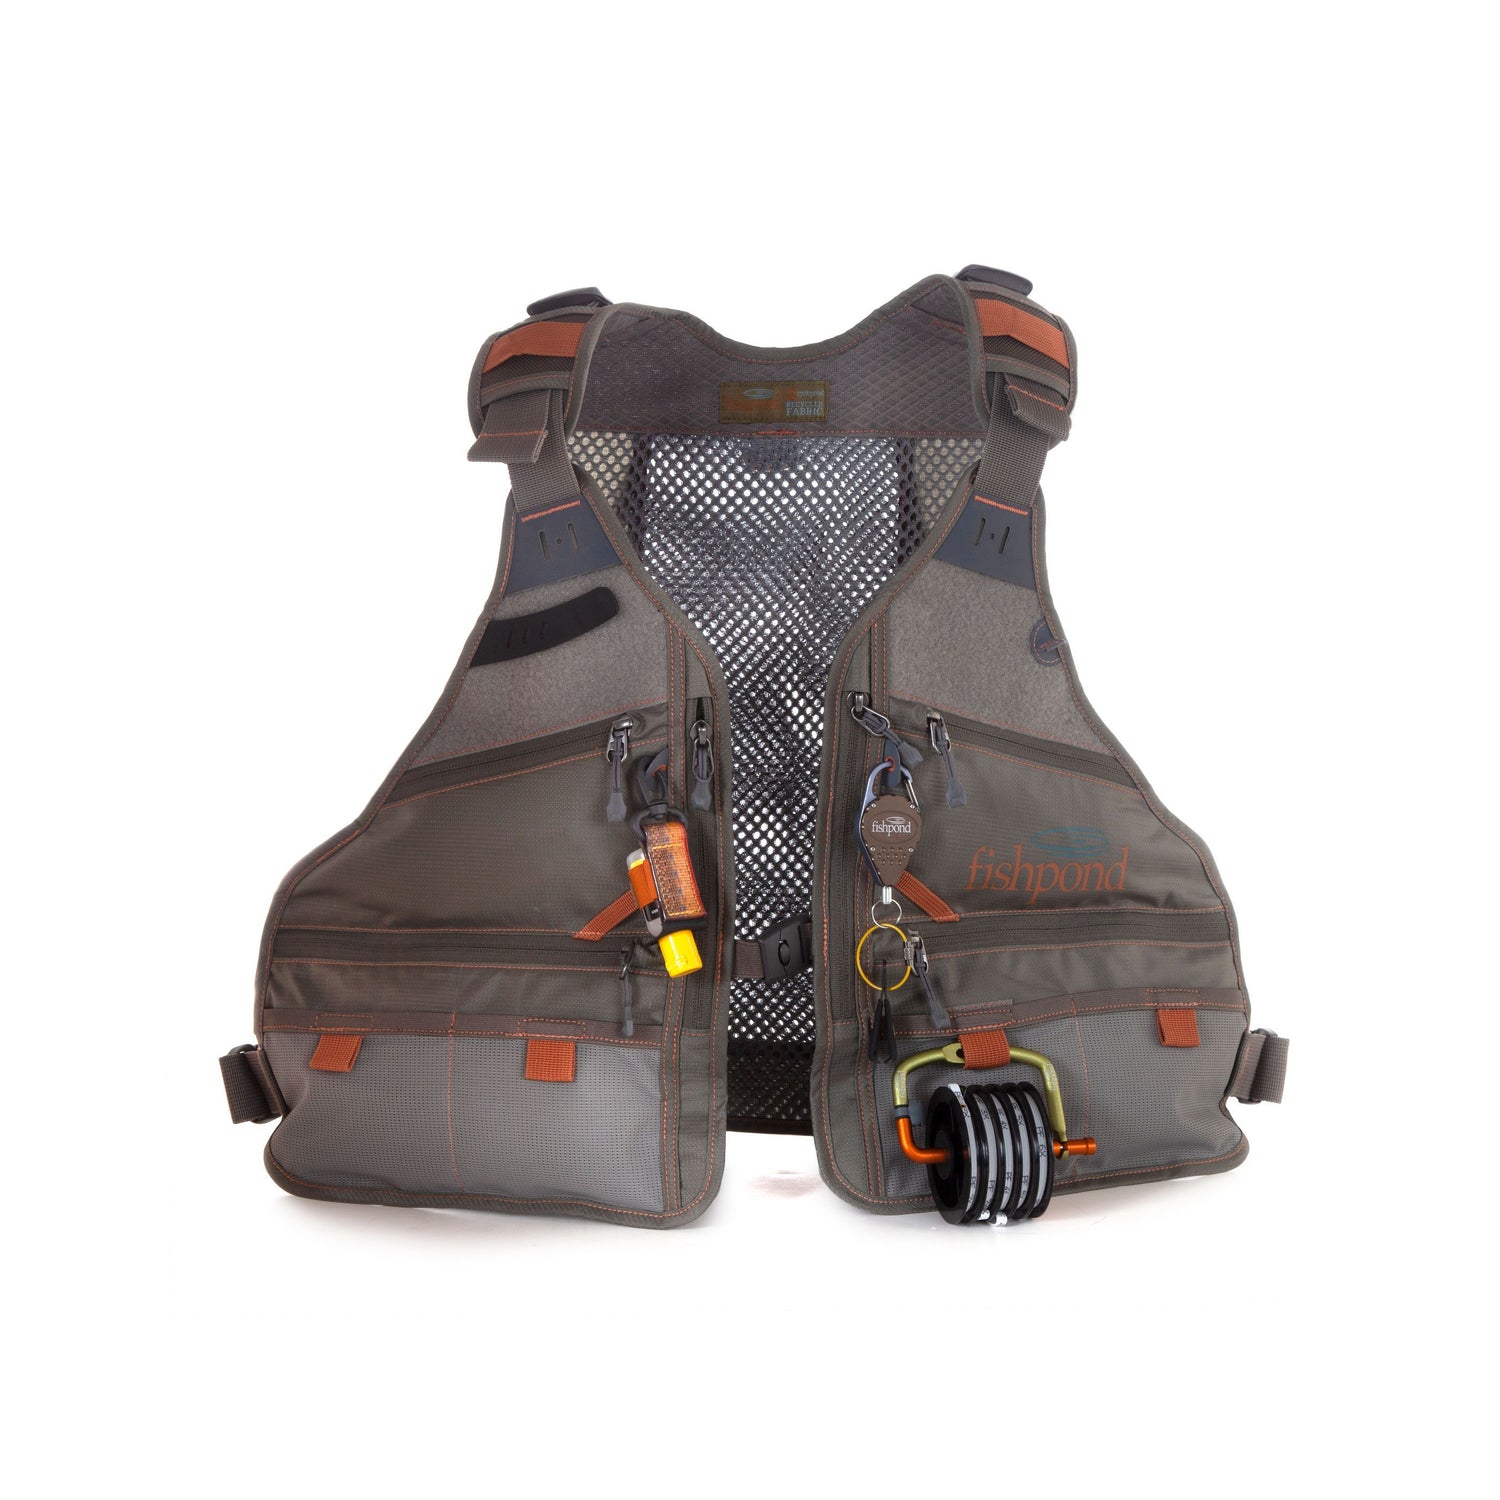 Boutique en ligne en gros Meilleur prix En savoir plus sur nous Blusea Mesh Fly  Fishing Vest Backpack Breathable Outdoor Fishing Safety  mitsubishicleansuivn